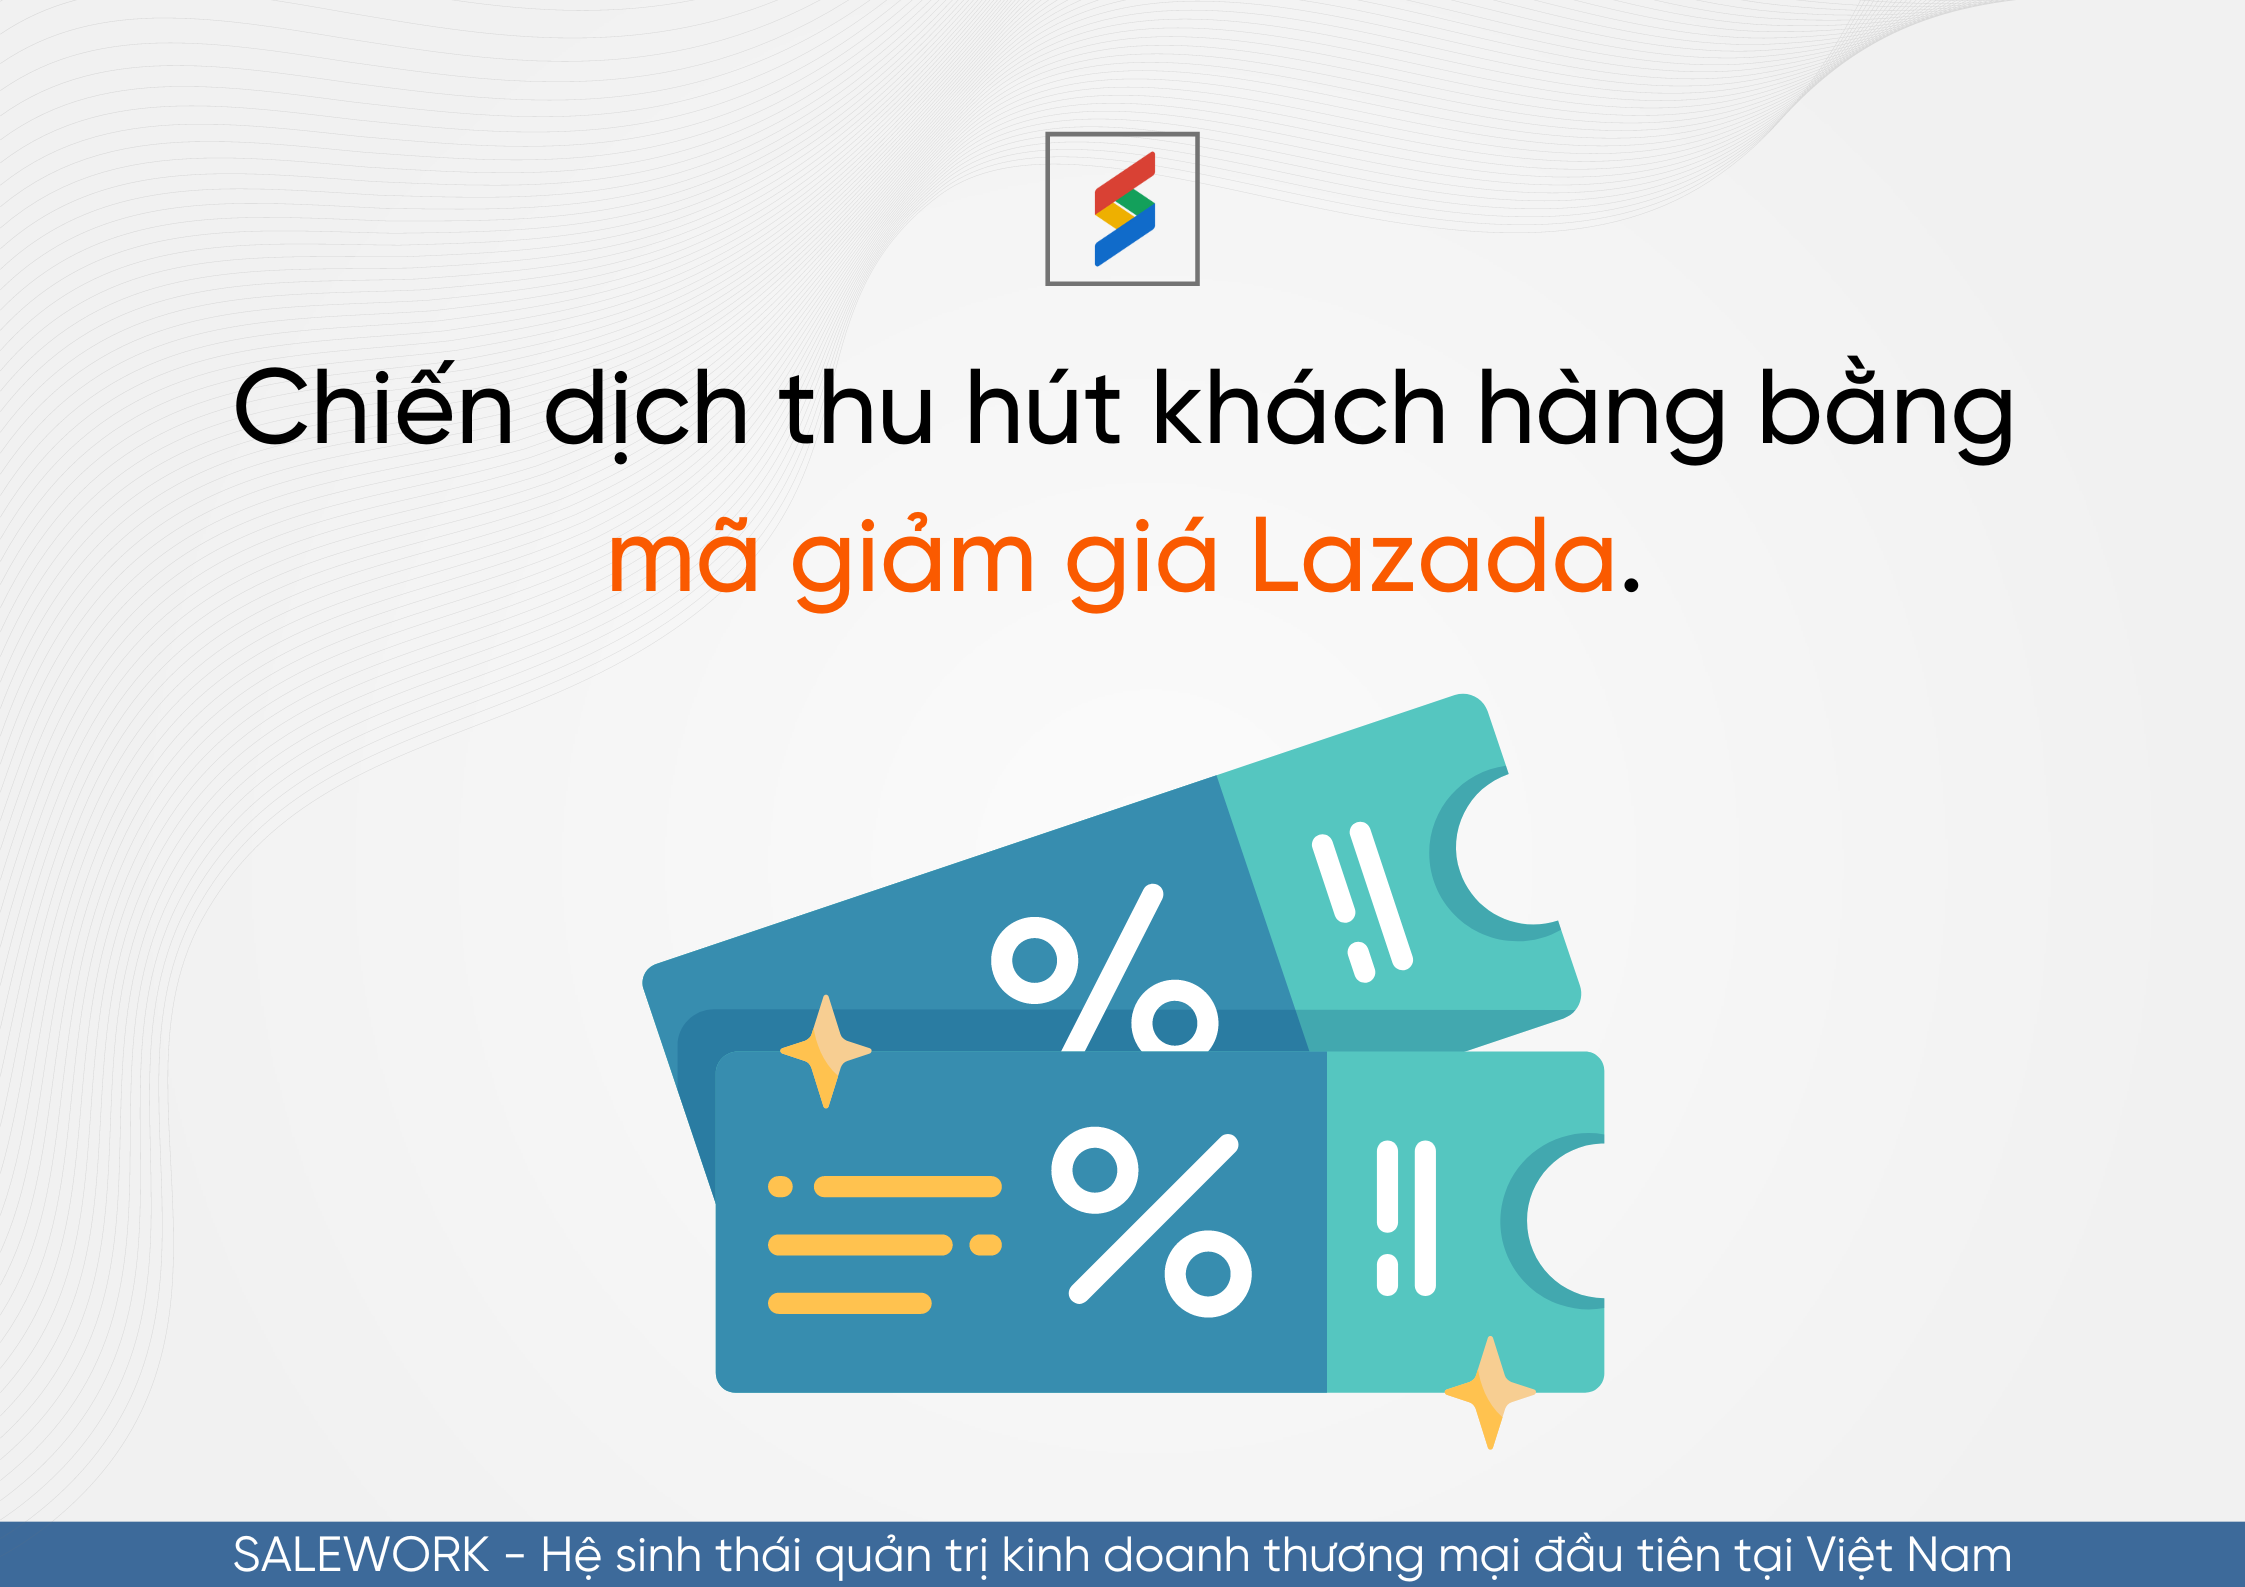 Hướng dẫn tạo mã giảm giá Lazada cho nhà bán hàng - 62